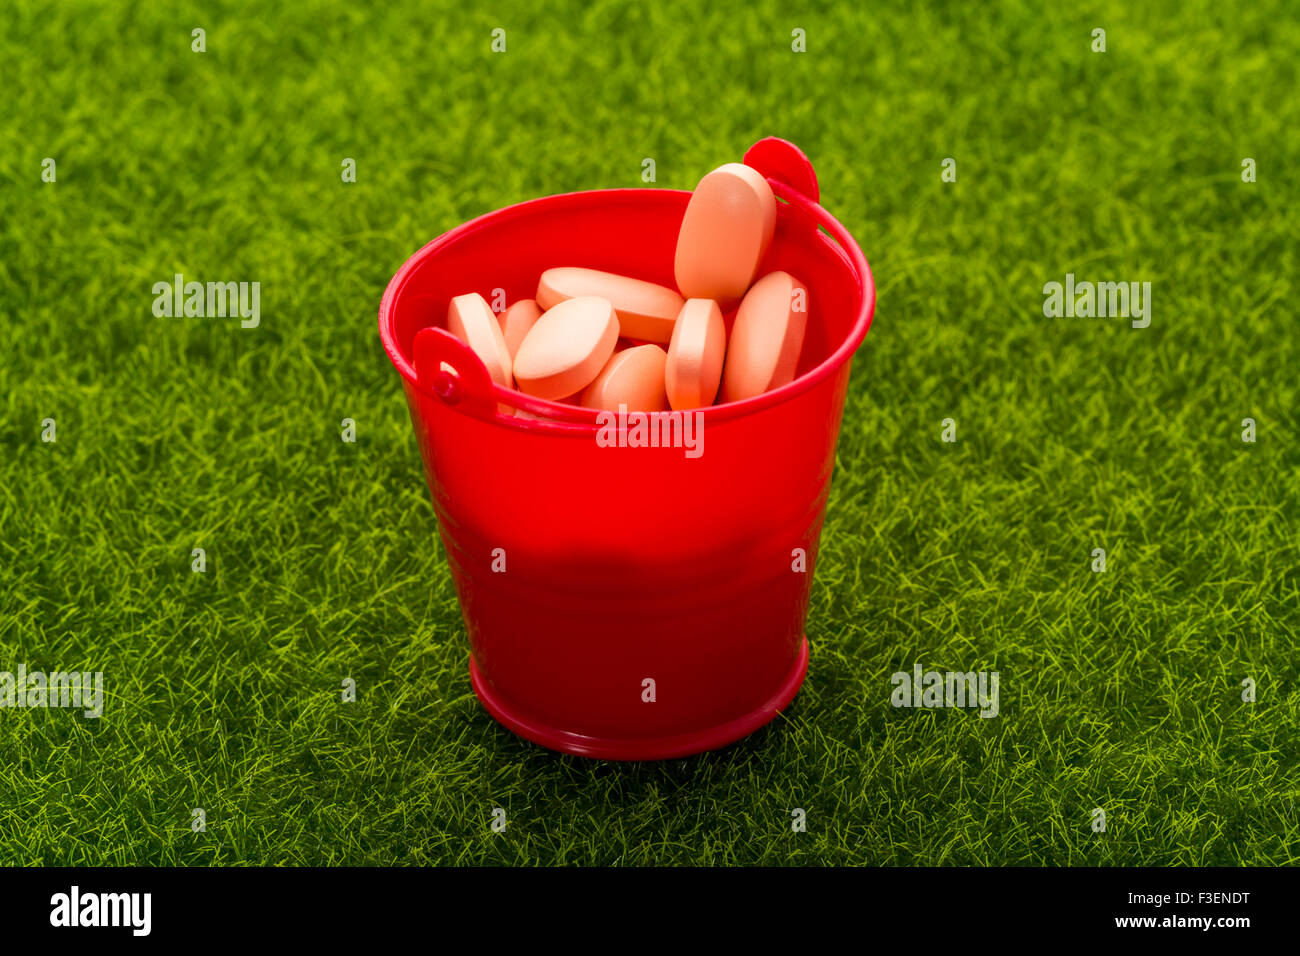 Rojo Naranja balde lleno de píldoras de pie sobre la hierba verde.Cerrar Foto de stock